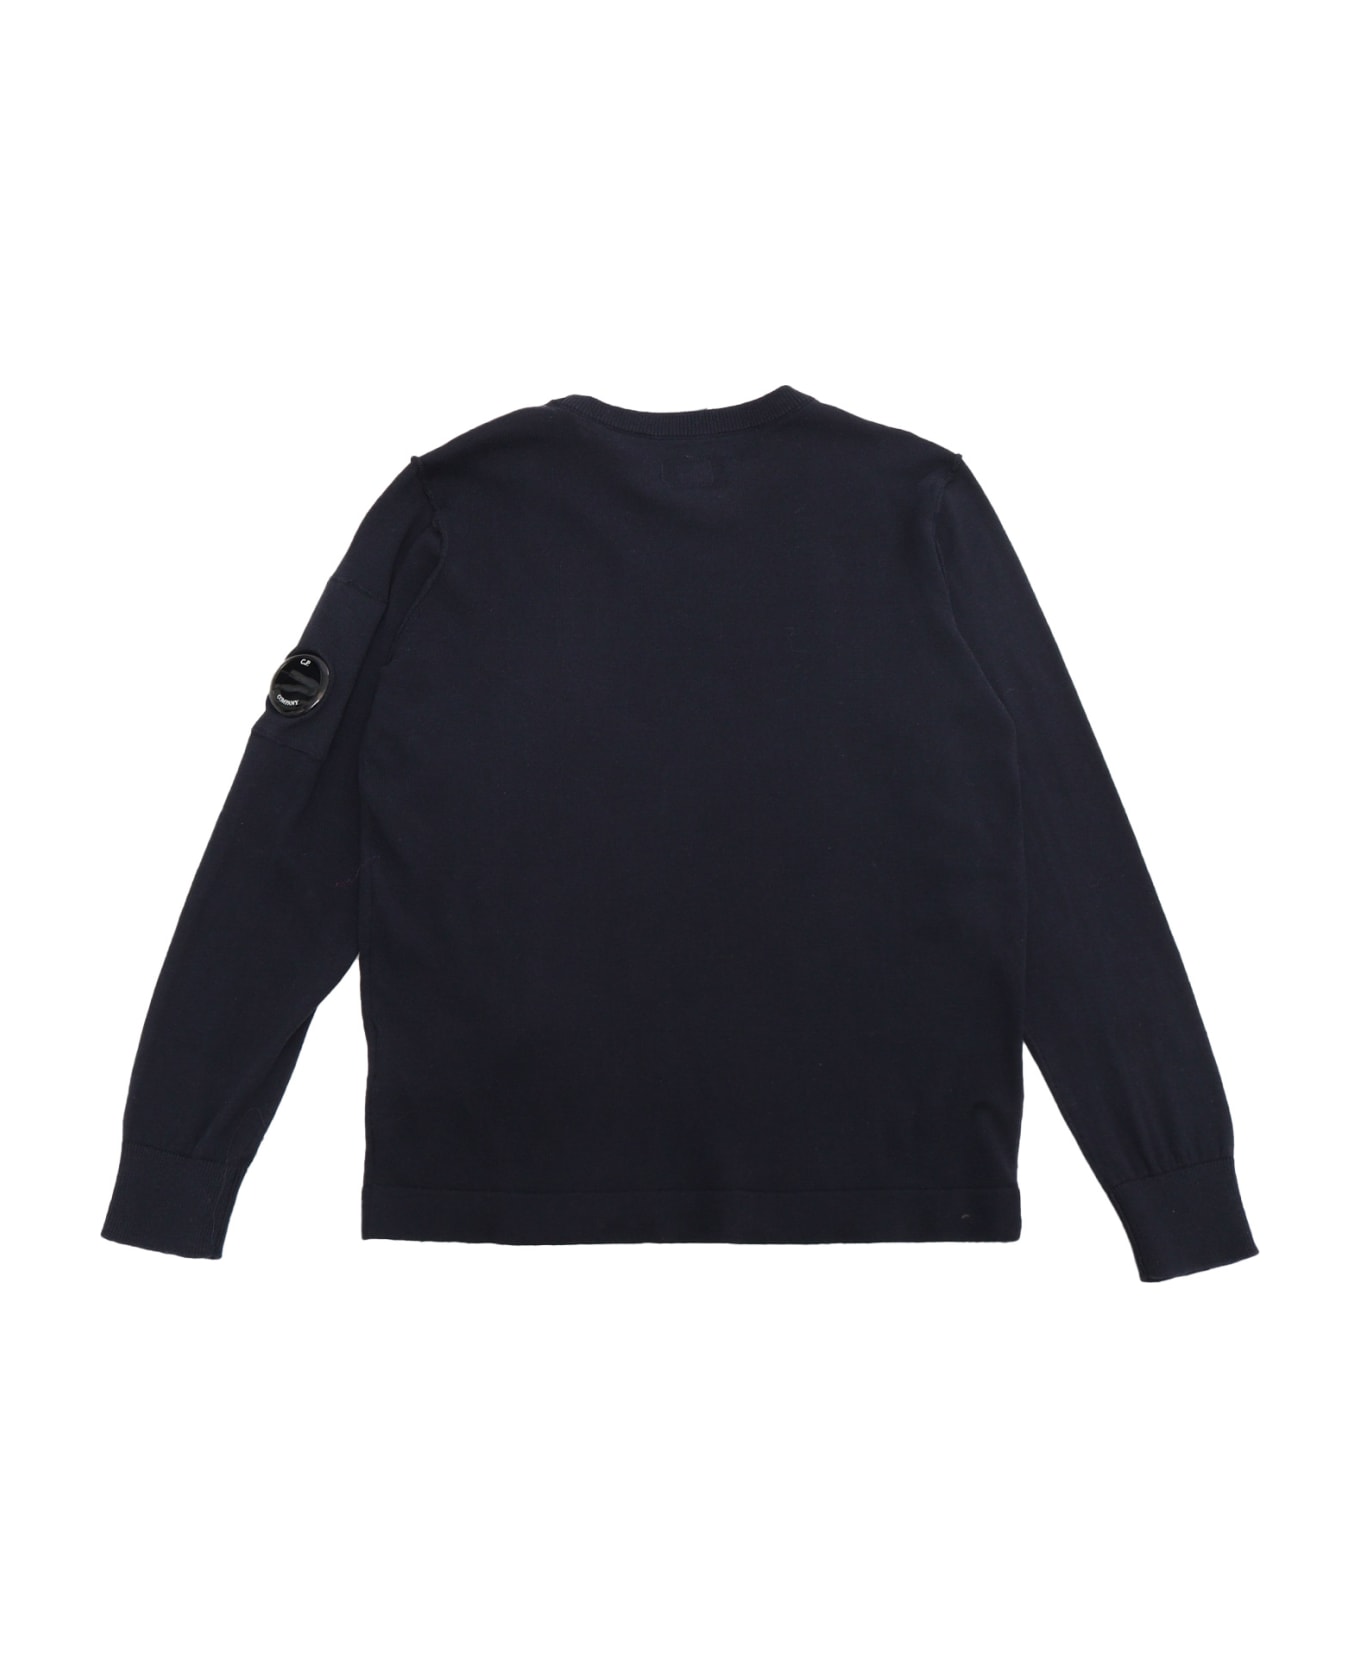 C.P. Company Undersixteen Black Sweater - BLUE